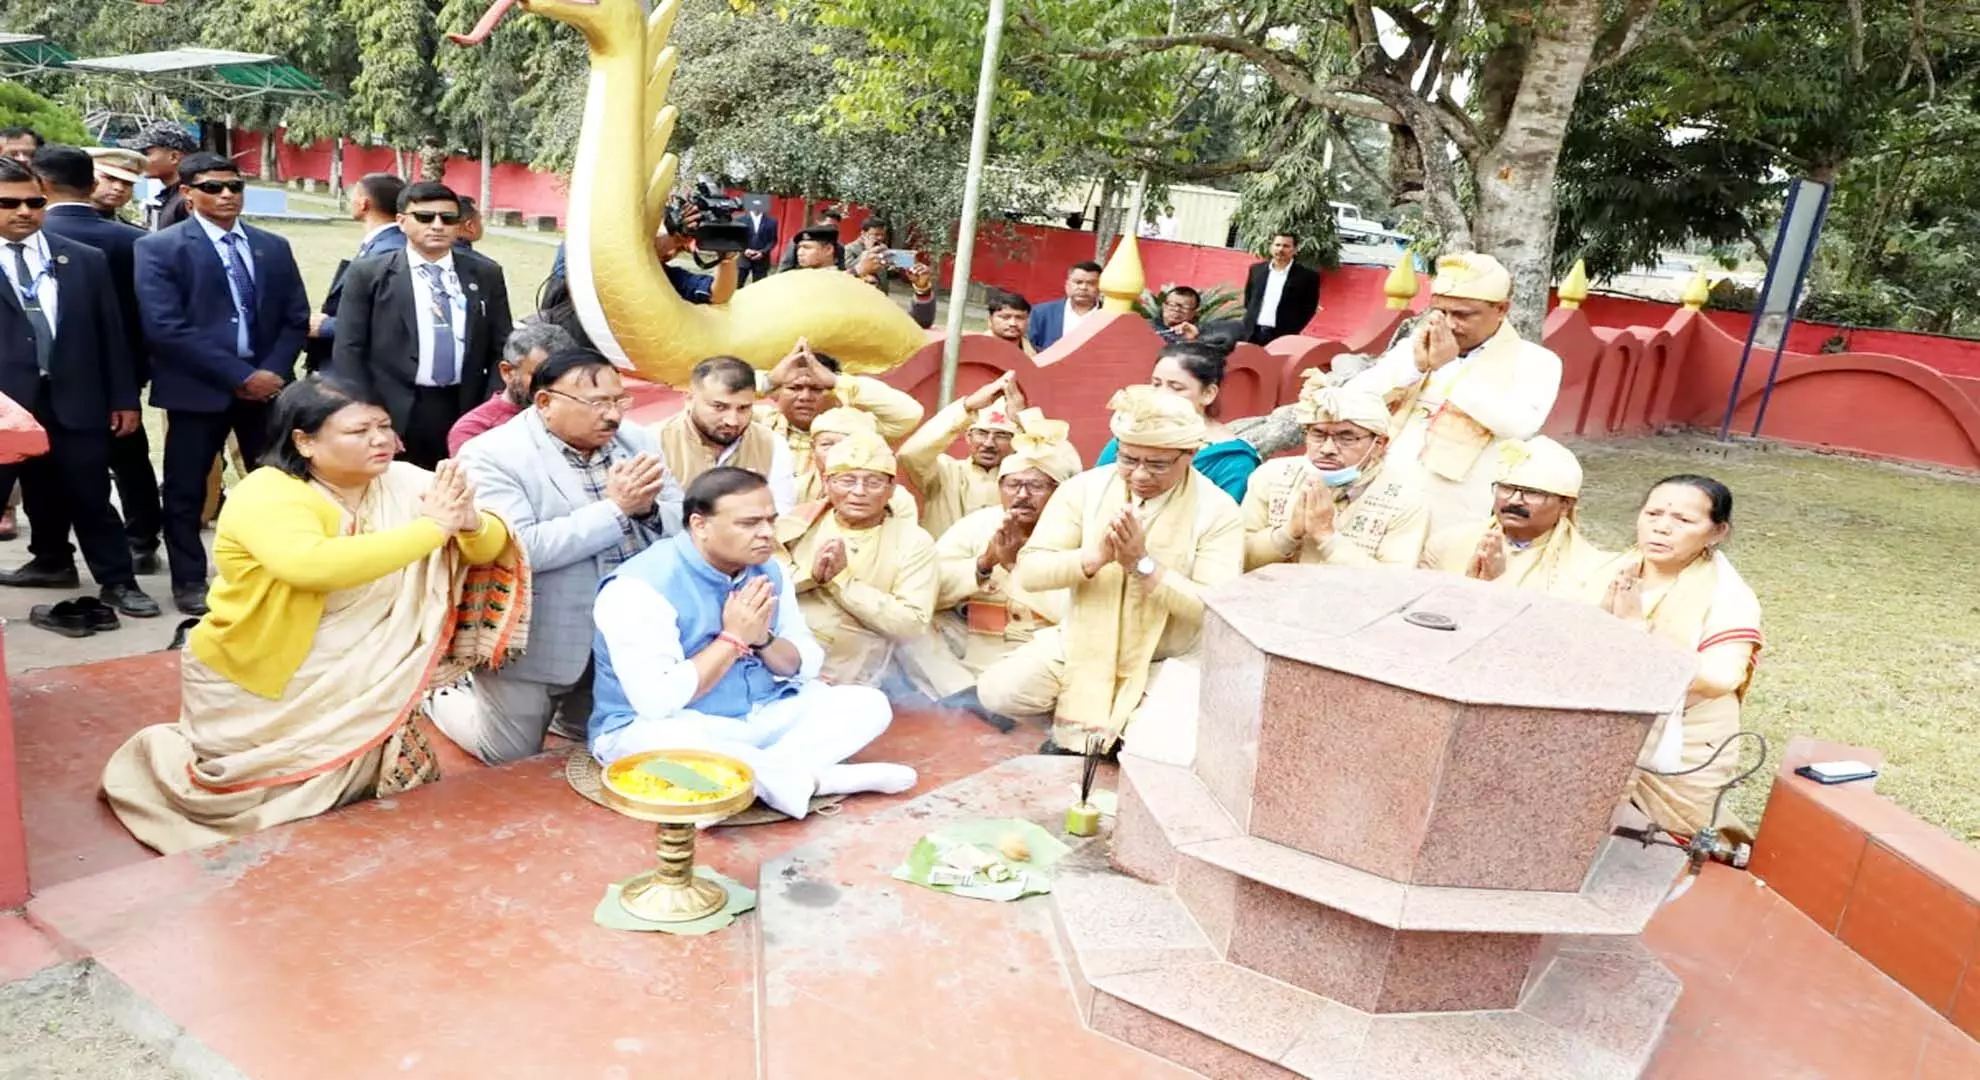 असम: पीएम मोदी को बीर लाचित बोरफुकन की 125 फुट ऊंची प्रतिमा का अनावरण करने के लिए आमंत्रित किया गया